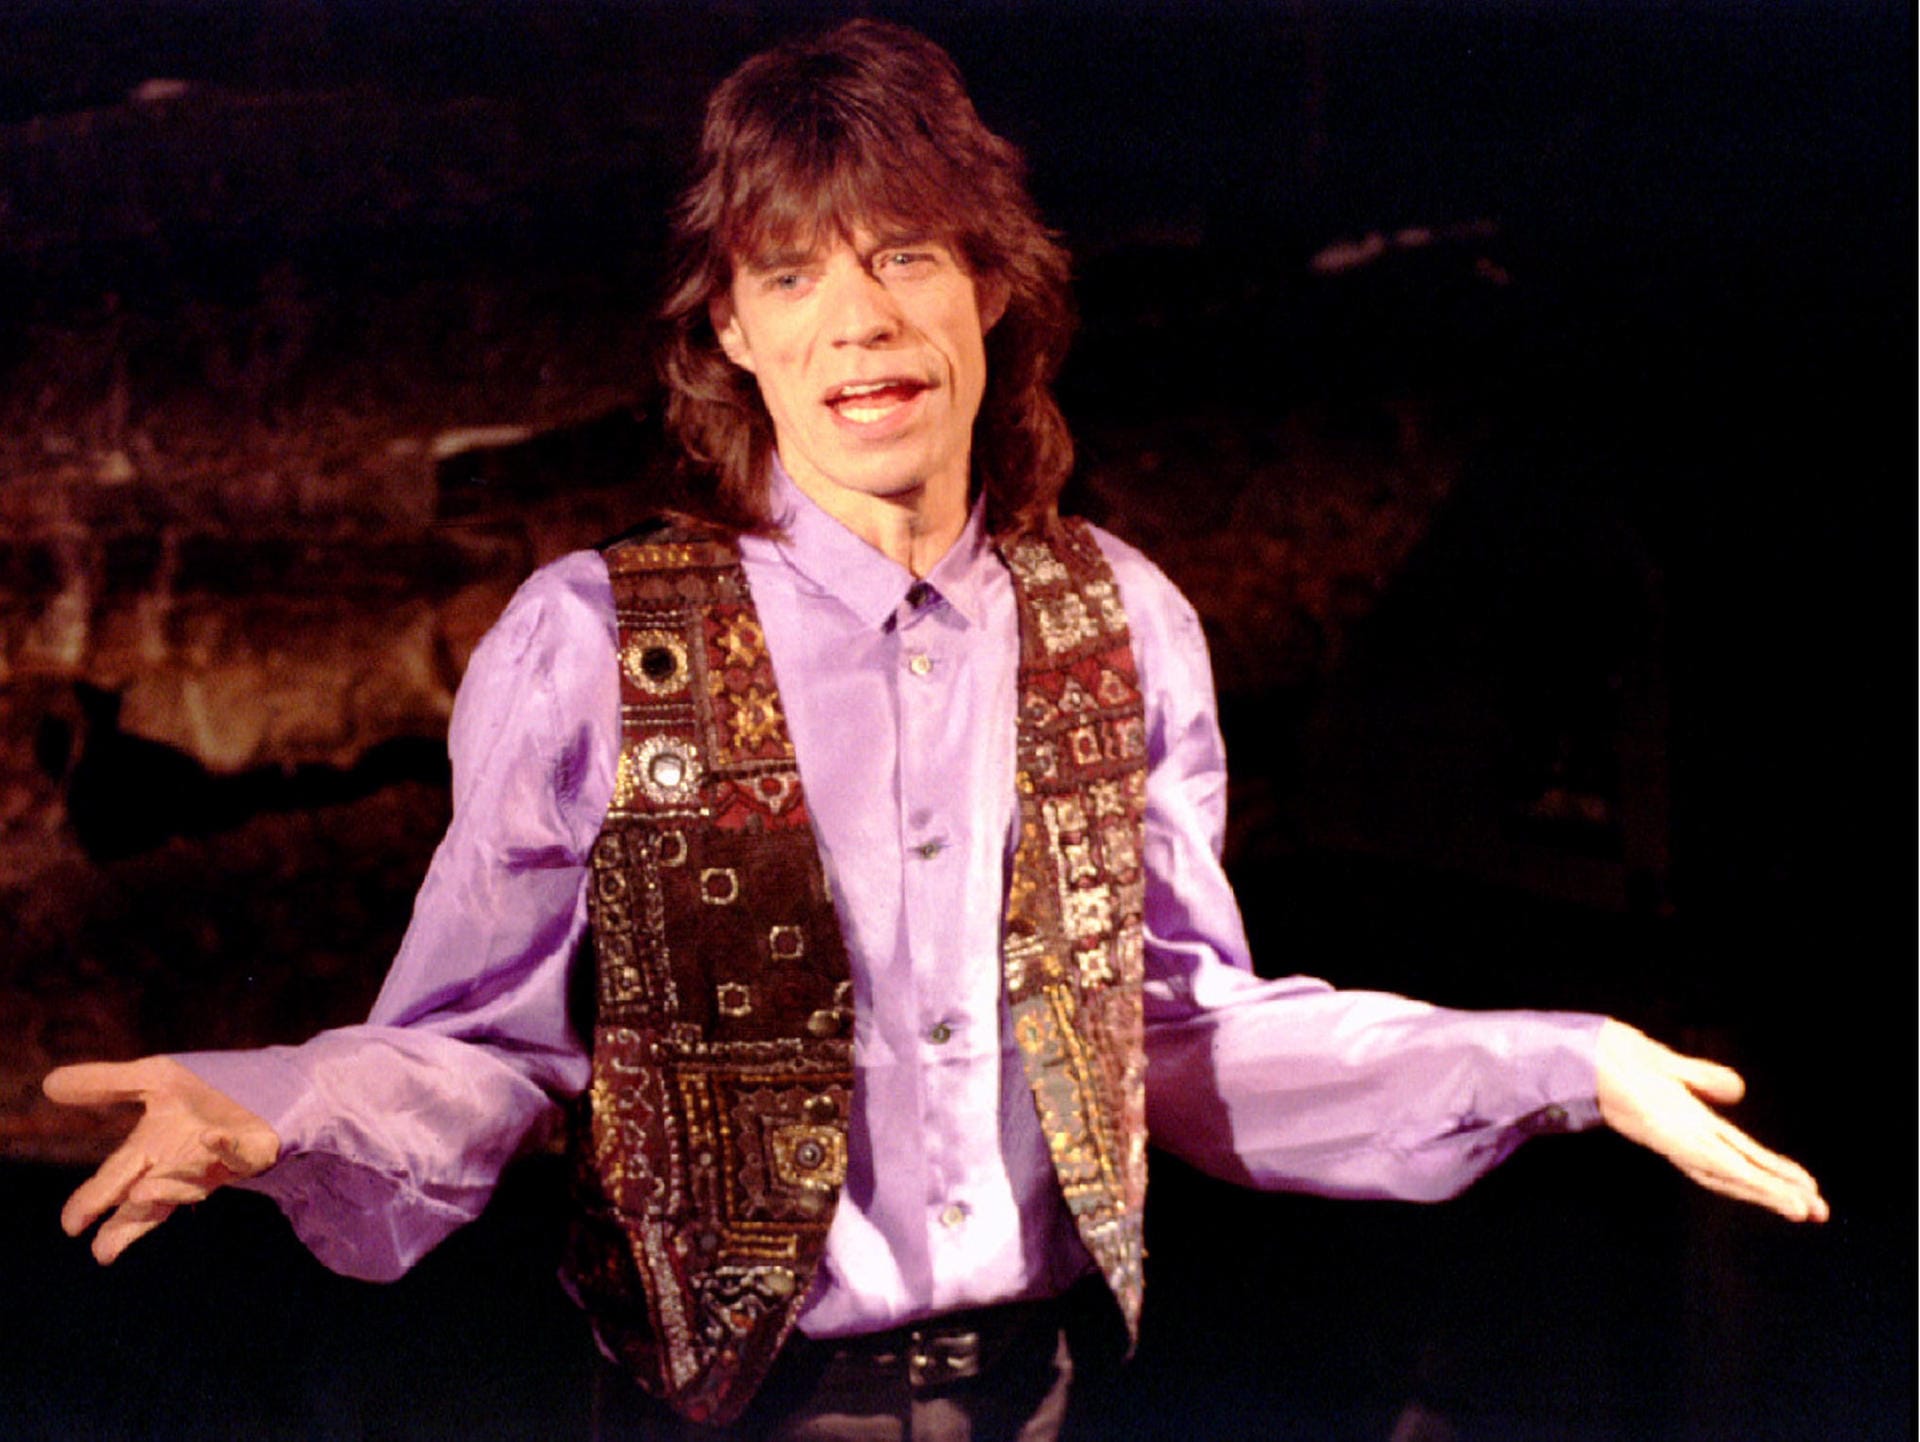 1993: Der Rockstar vor der Veröffentlichung seines dritten Solo-Albums "Wandering Spirit" in New York. Insgesamt veröffentlichte Mick Jagger vier Alben als Solo-Künstler ohne The Rolling Stones.